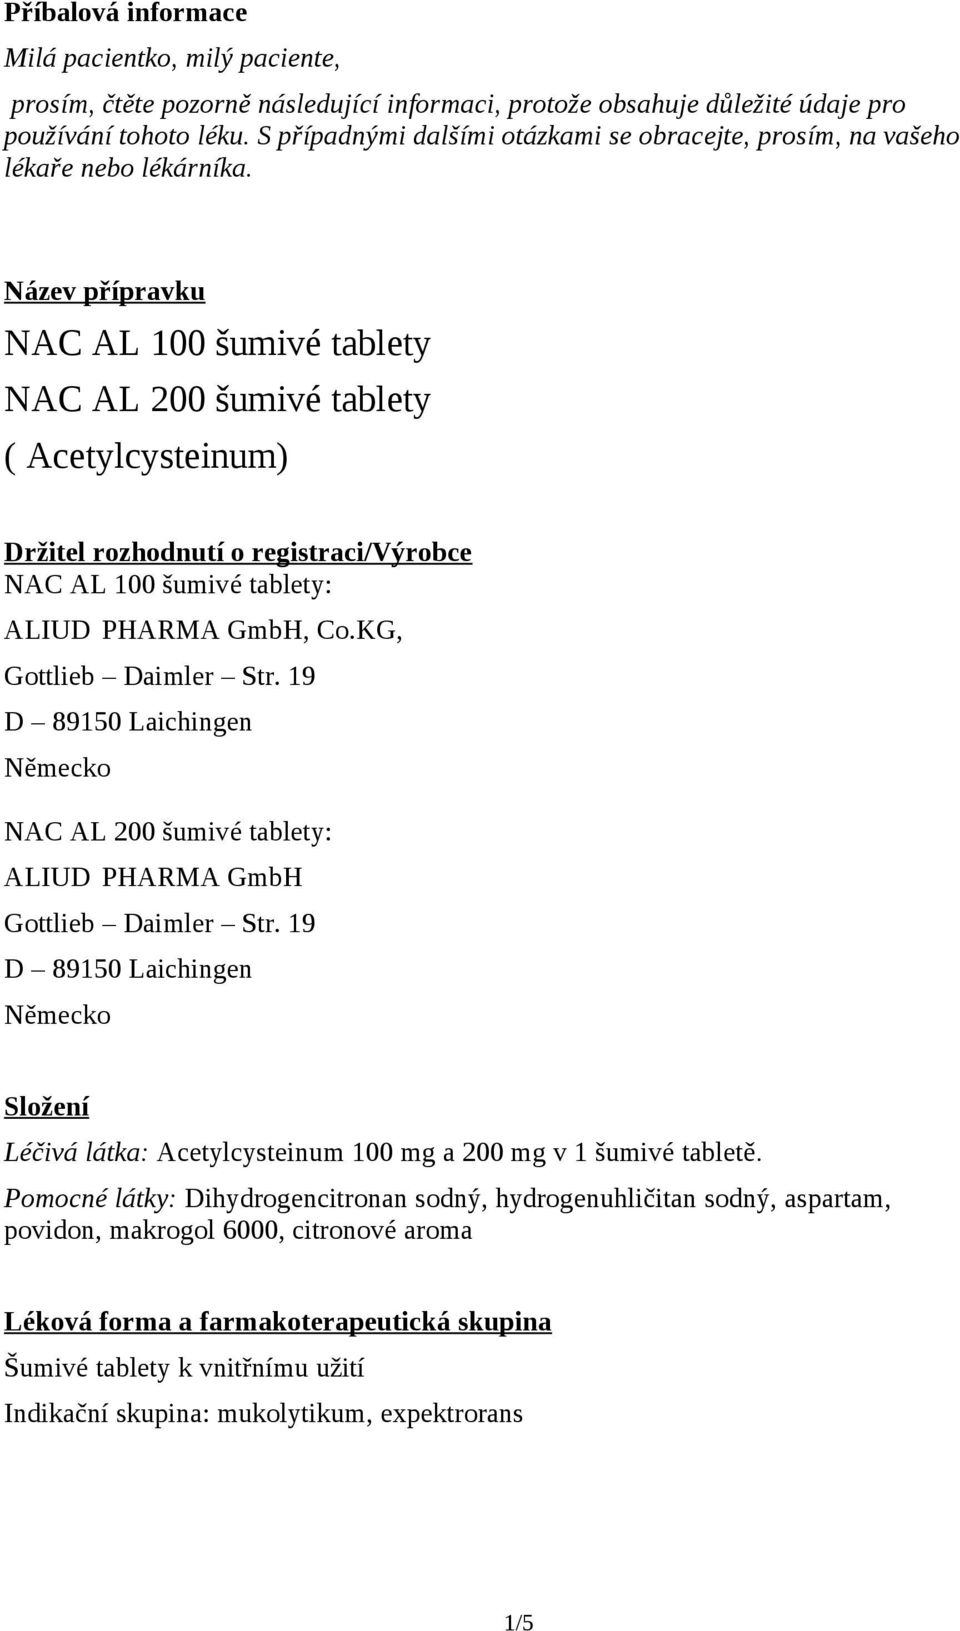 Název přípravku NAC AL 100 šumivé tablety NAC AL 200 šumivé tablety ( Acetylcysteinum) Držitel rozhodnutí o registraci/výrobce NAC AL 100 šumivé tablety: ALIUD PHARMA GmbH, Co.